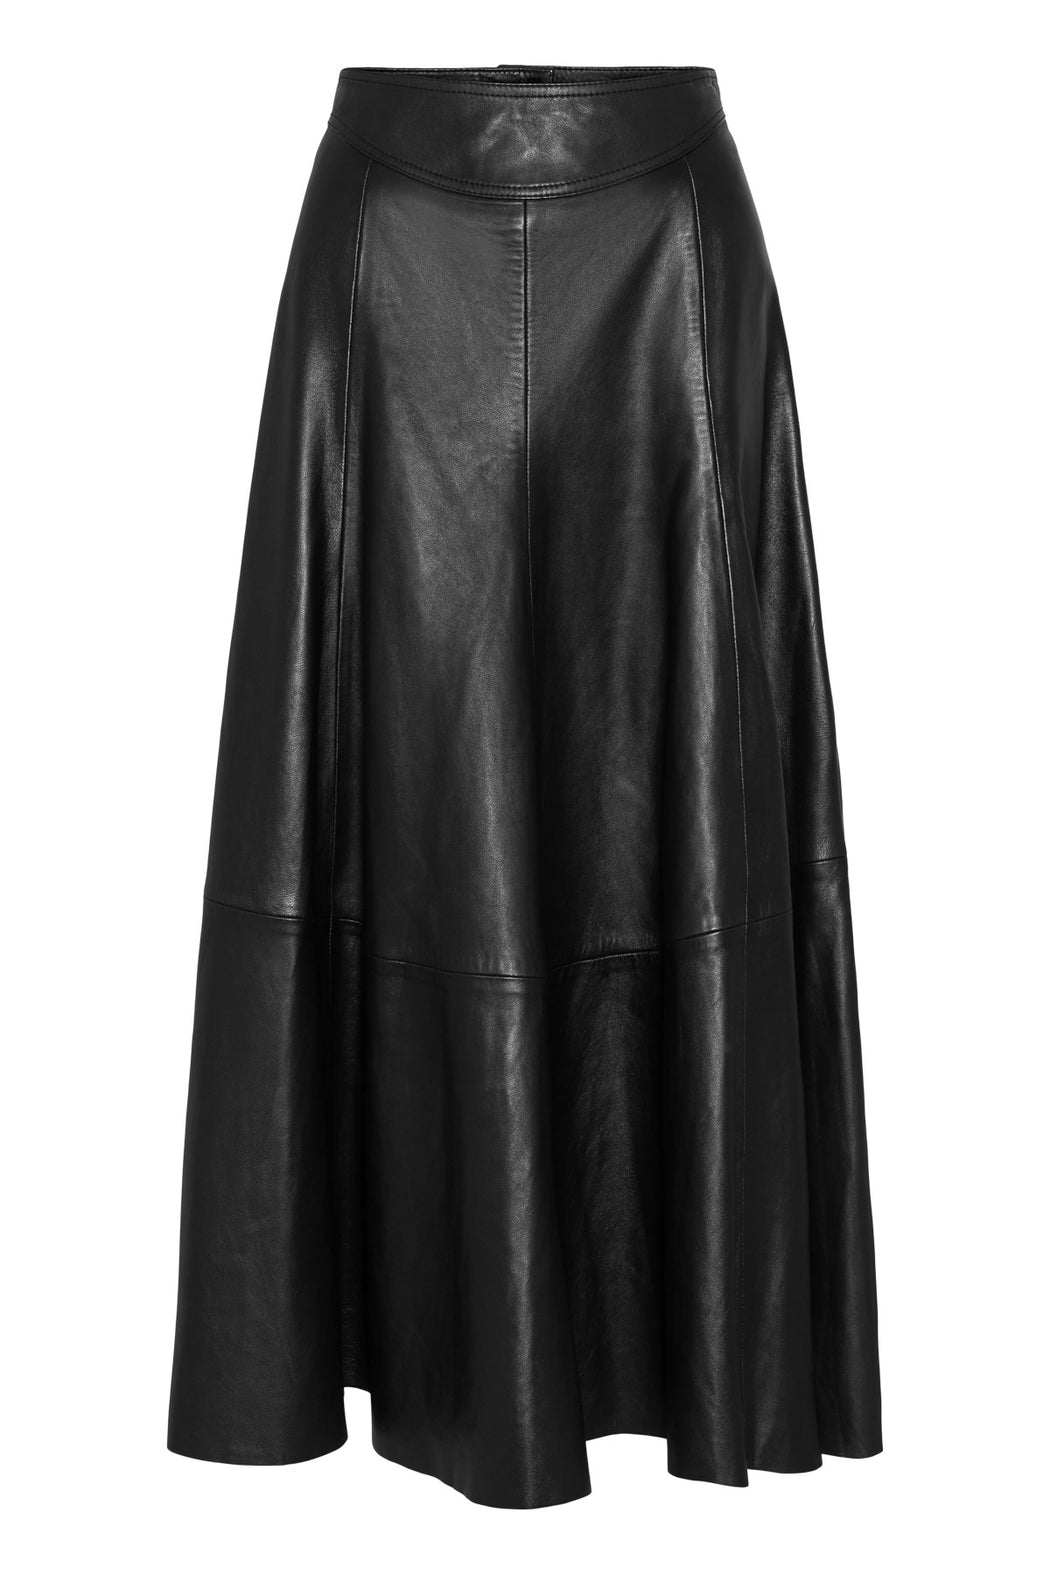 Envelope1976 Mika skirt - Leather Skirt Black